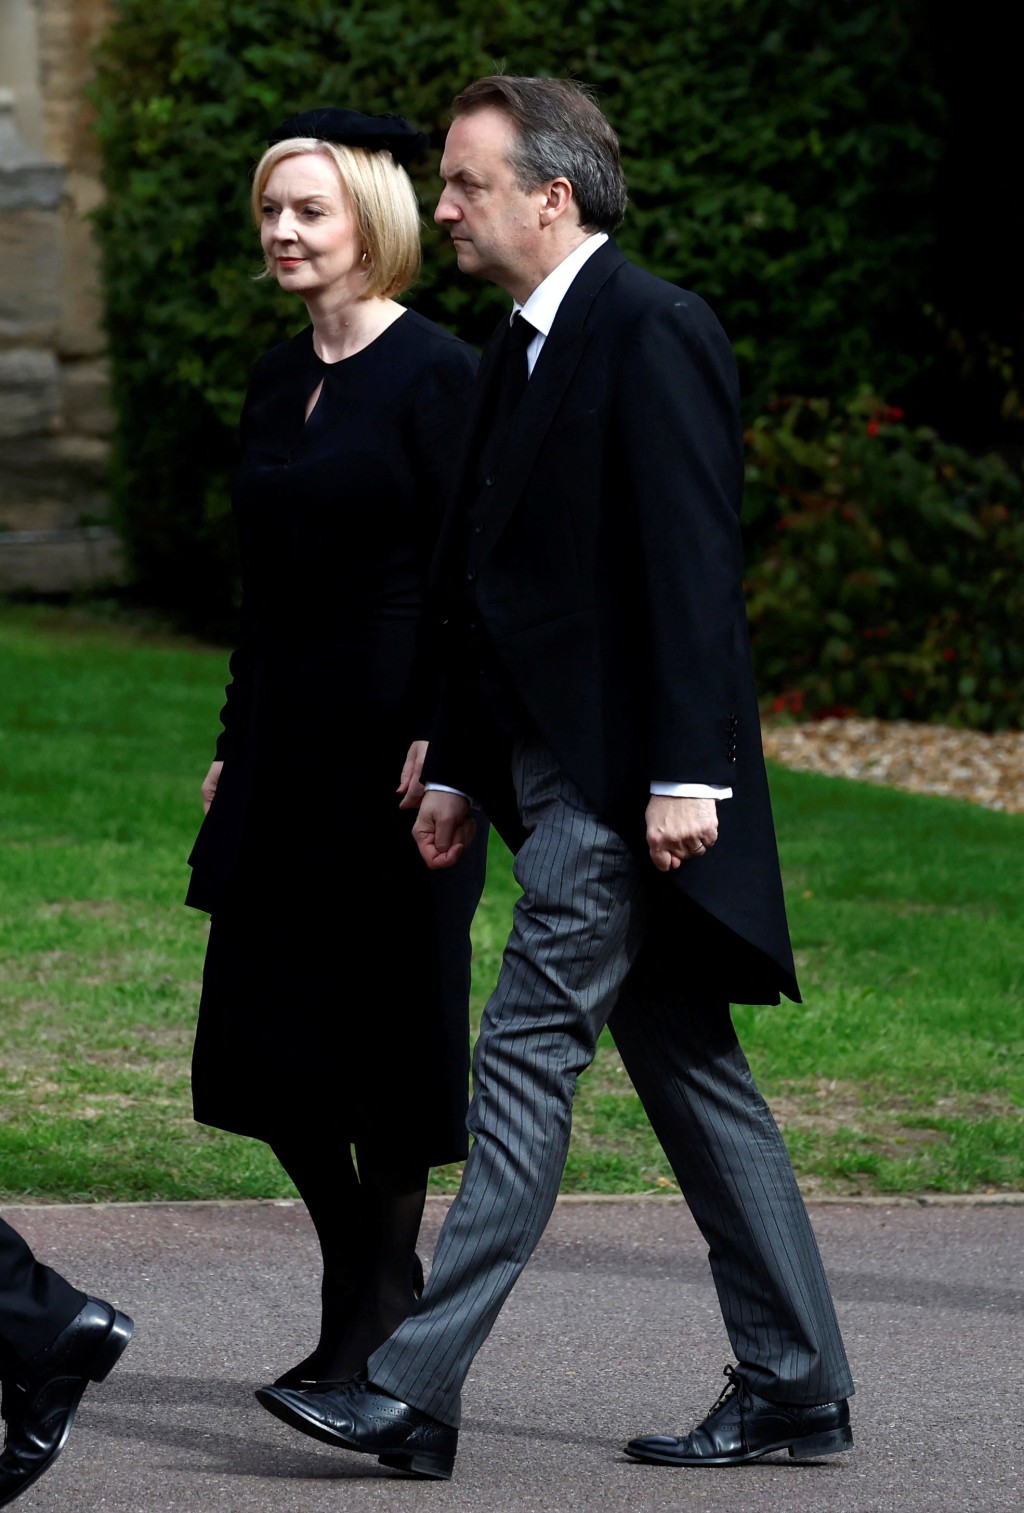 英國新任首相卓慧思和丈夫出席國葬儀式。路透社